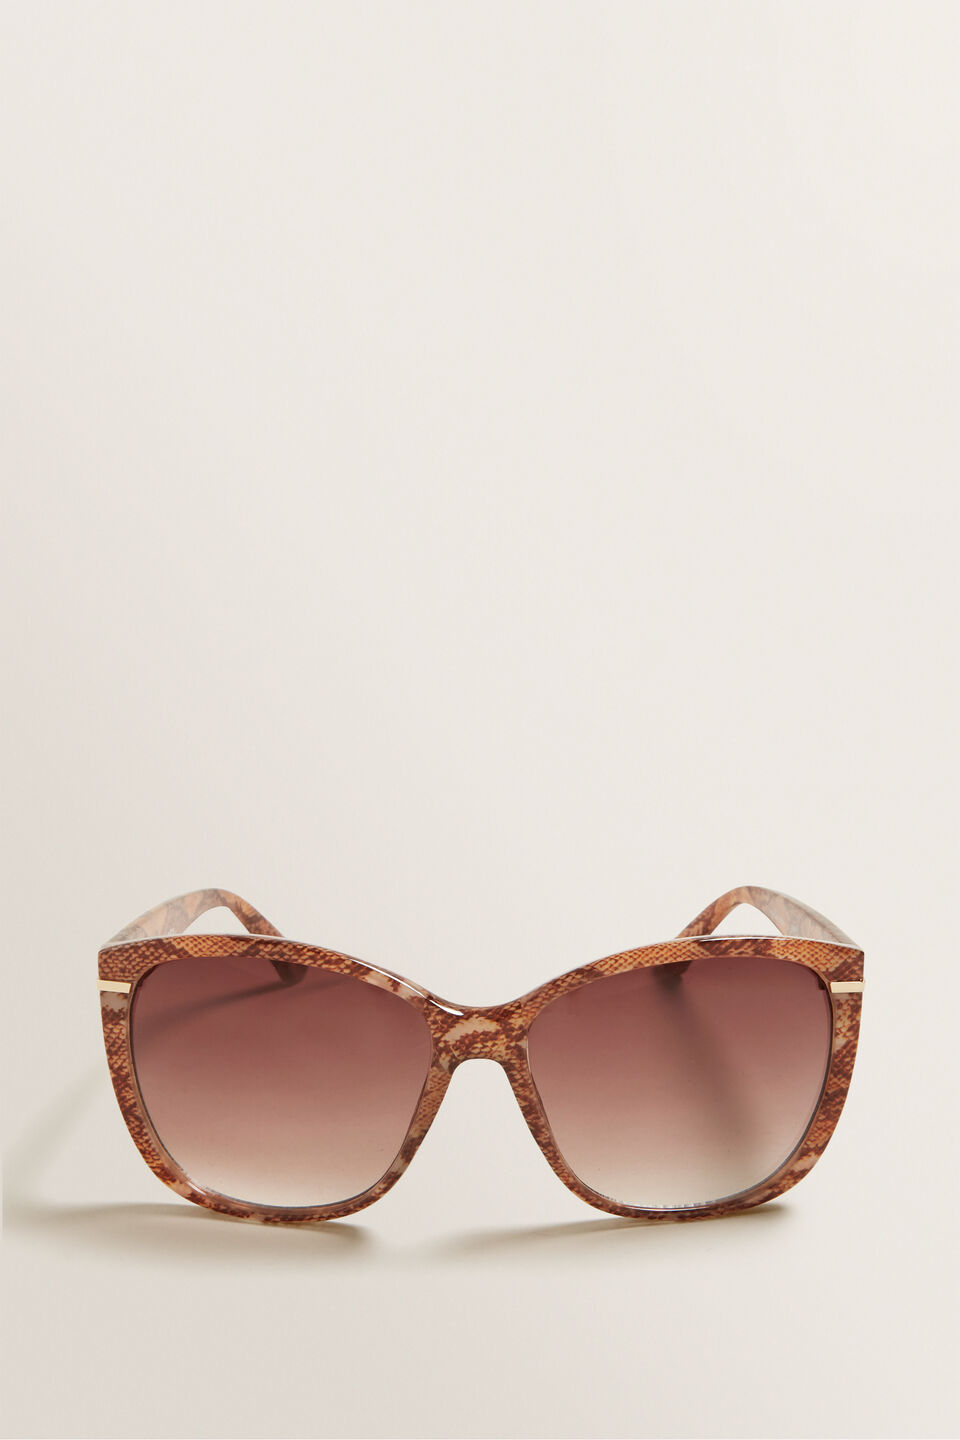 Piper Sunglasses  